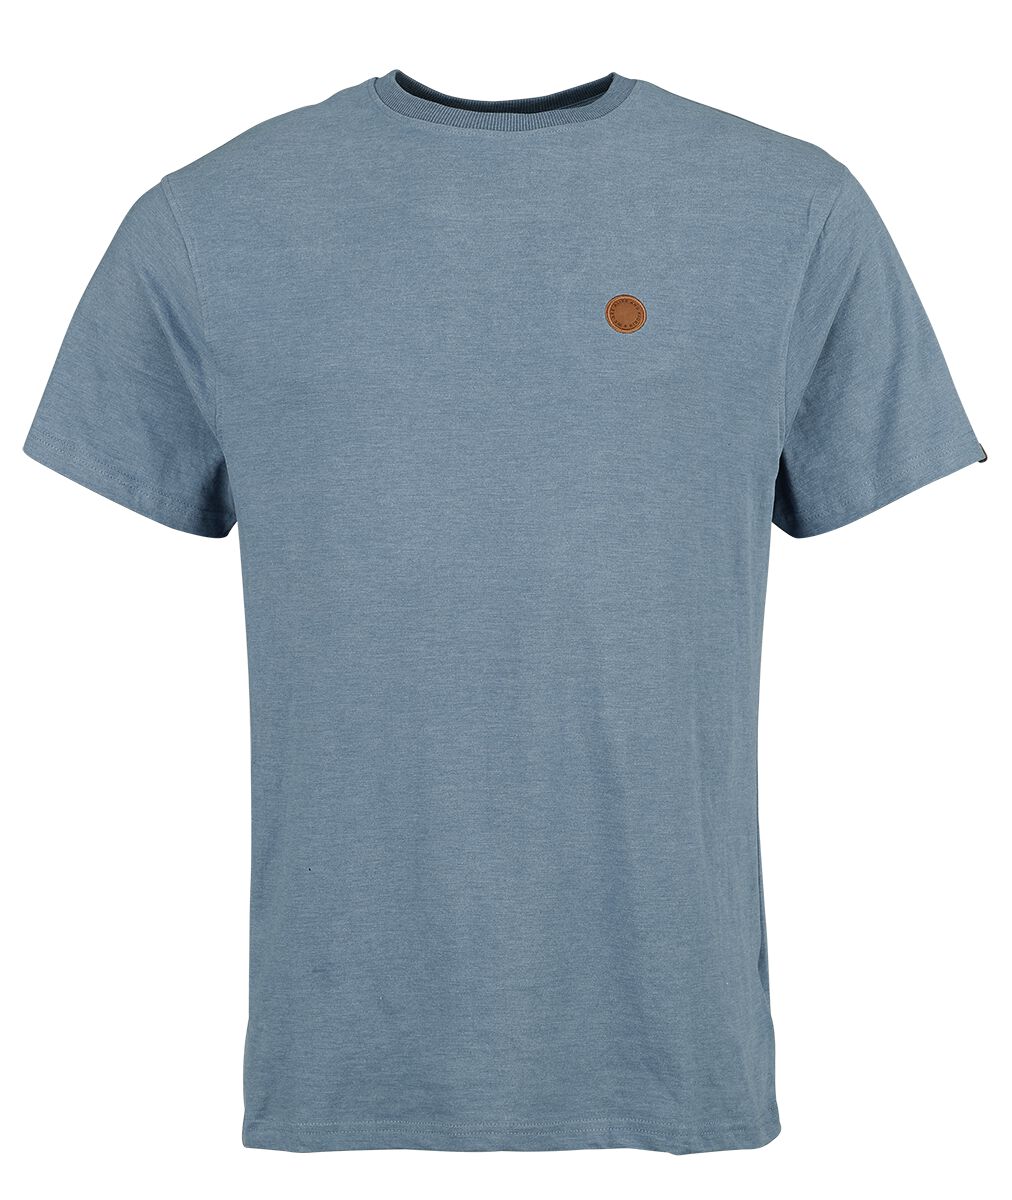 Alife and Kickin T-Shirt - MaddoxAK A Shirt - S bis XXL - für Männer - Größe XL - blau